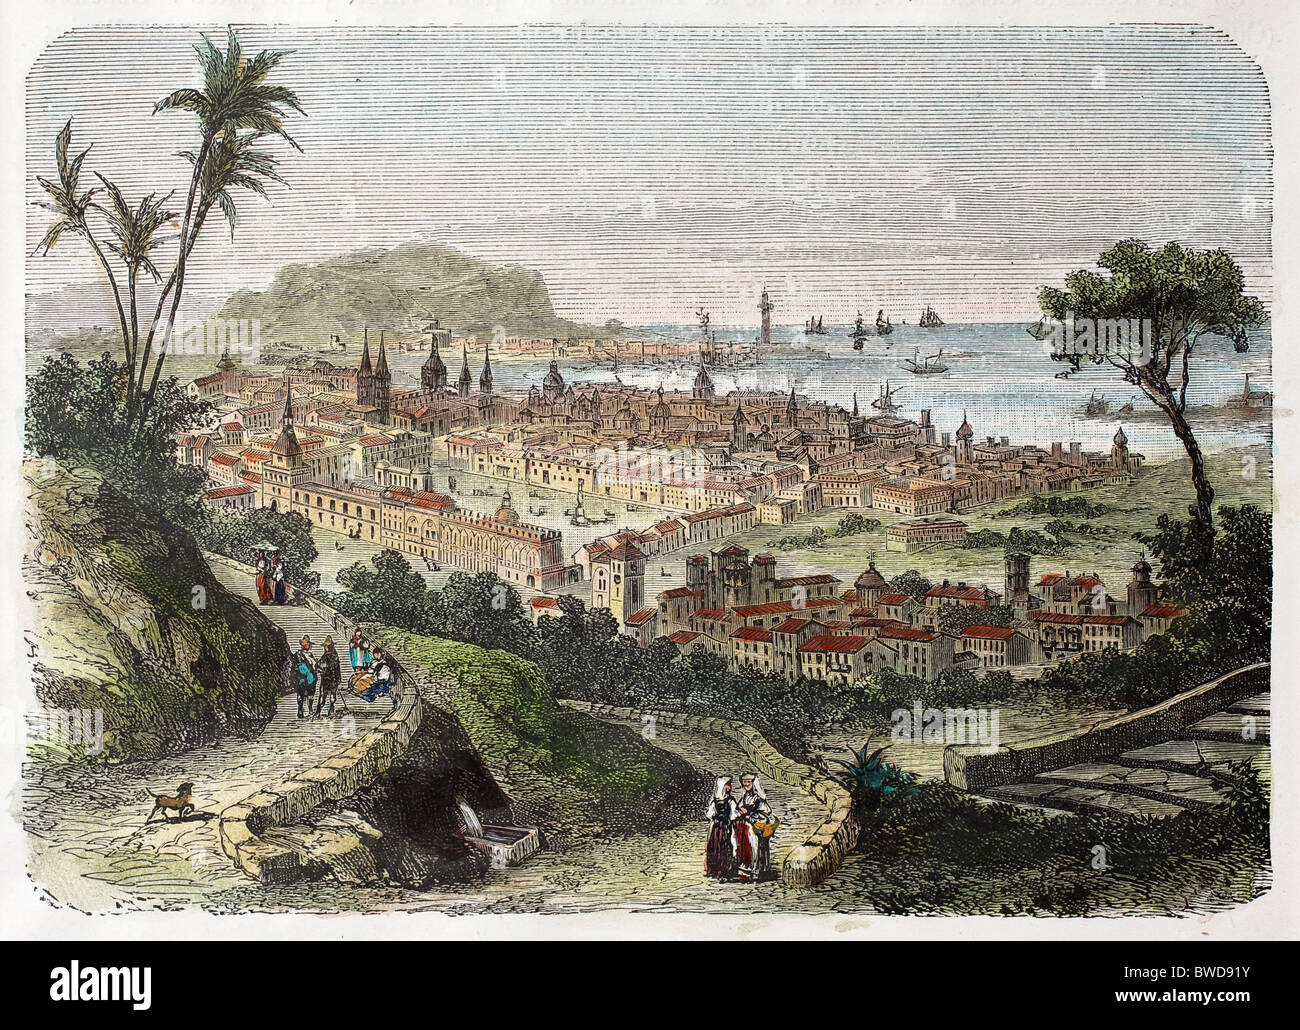 Anzeigen von Palermo, Sizilien, aus einem alten watercolored Kupferstich von Bertrand und marichal, etwa datable Zum 19. c. Stockfoto